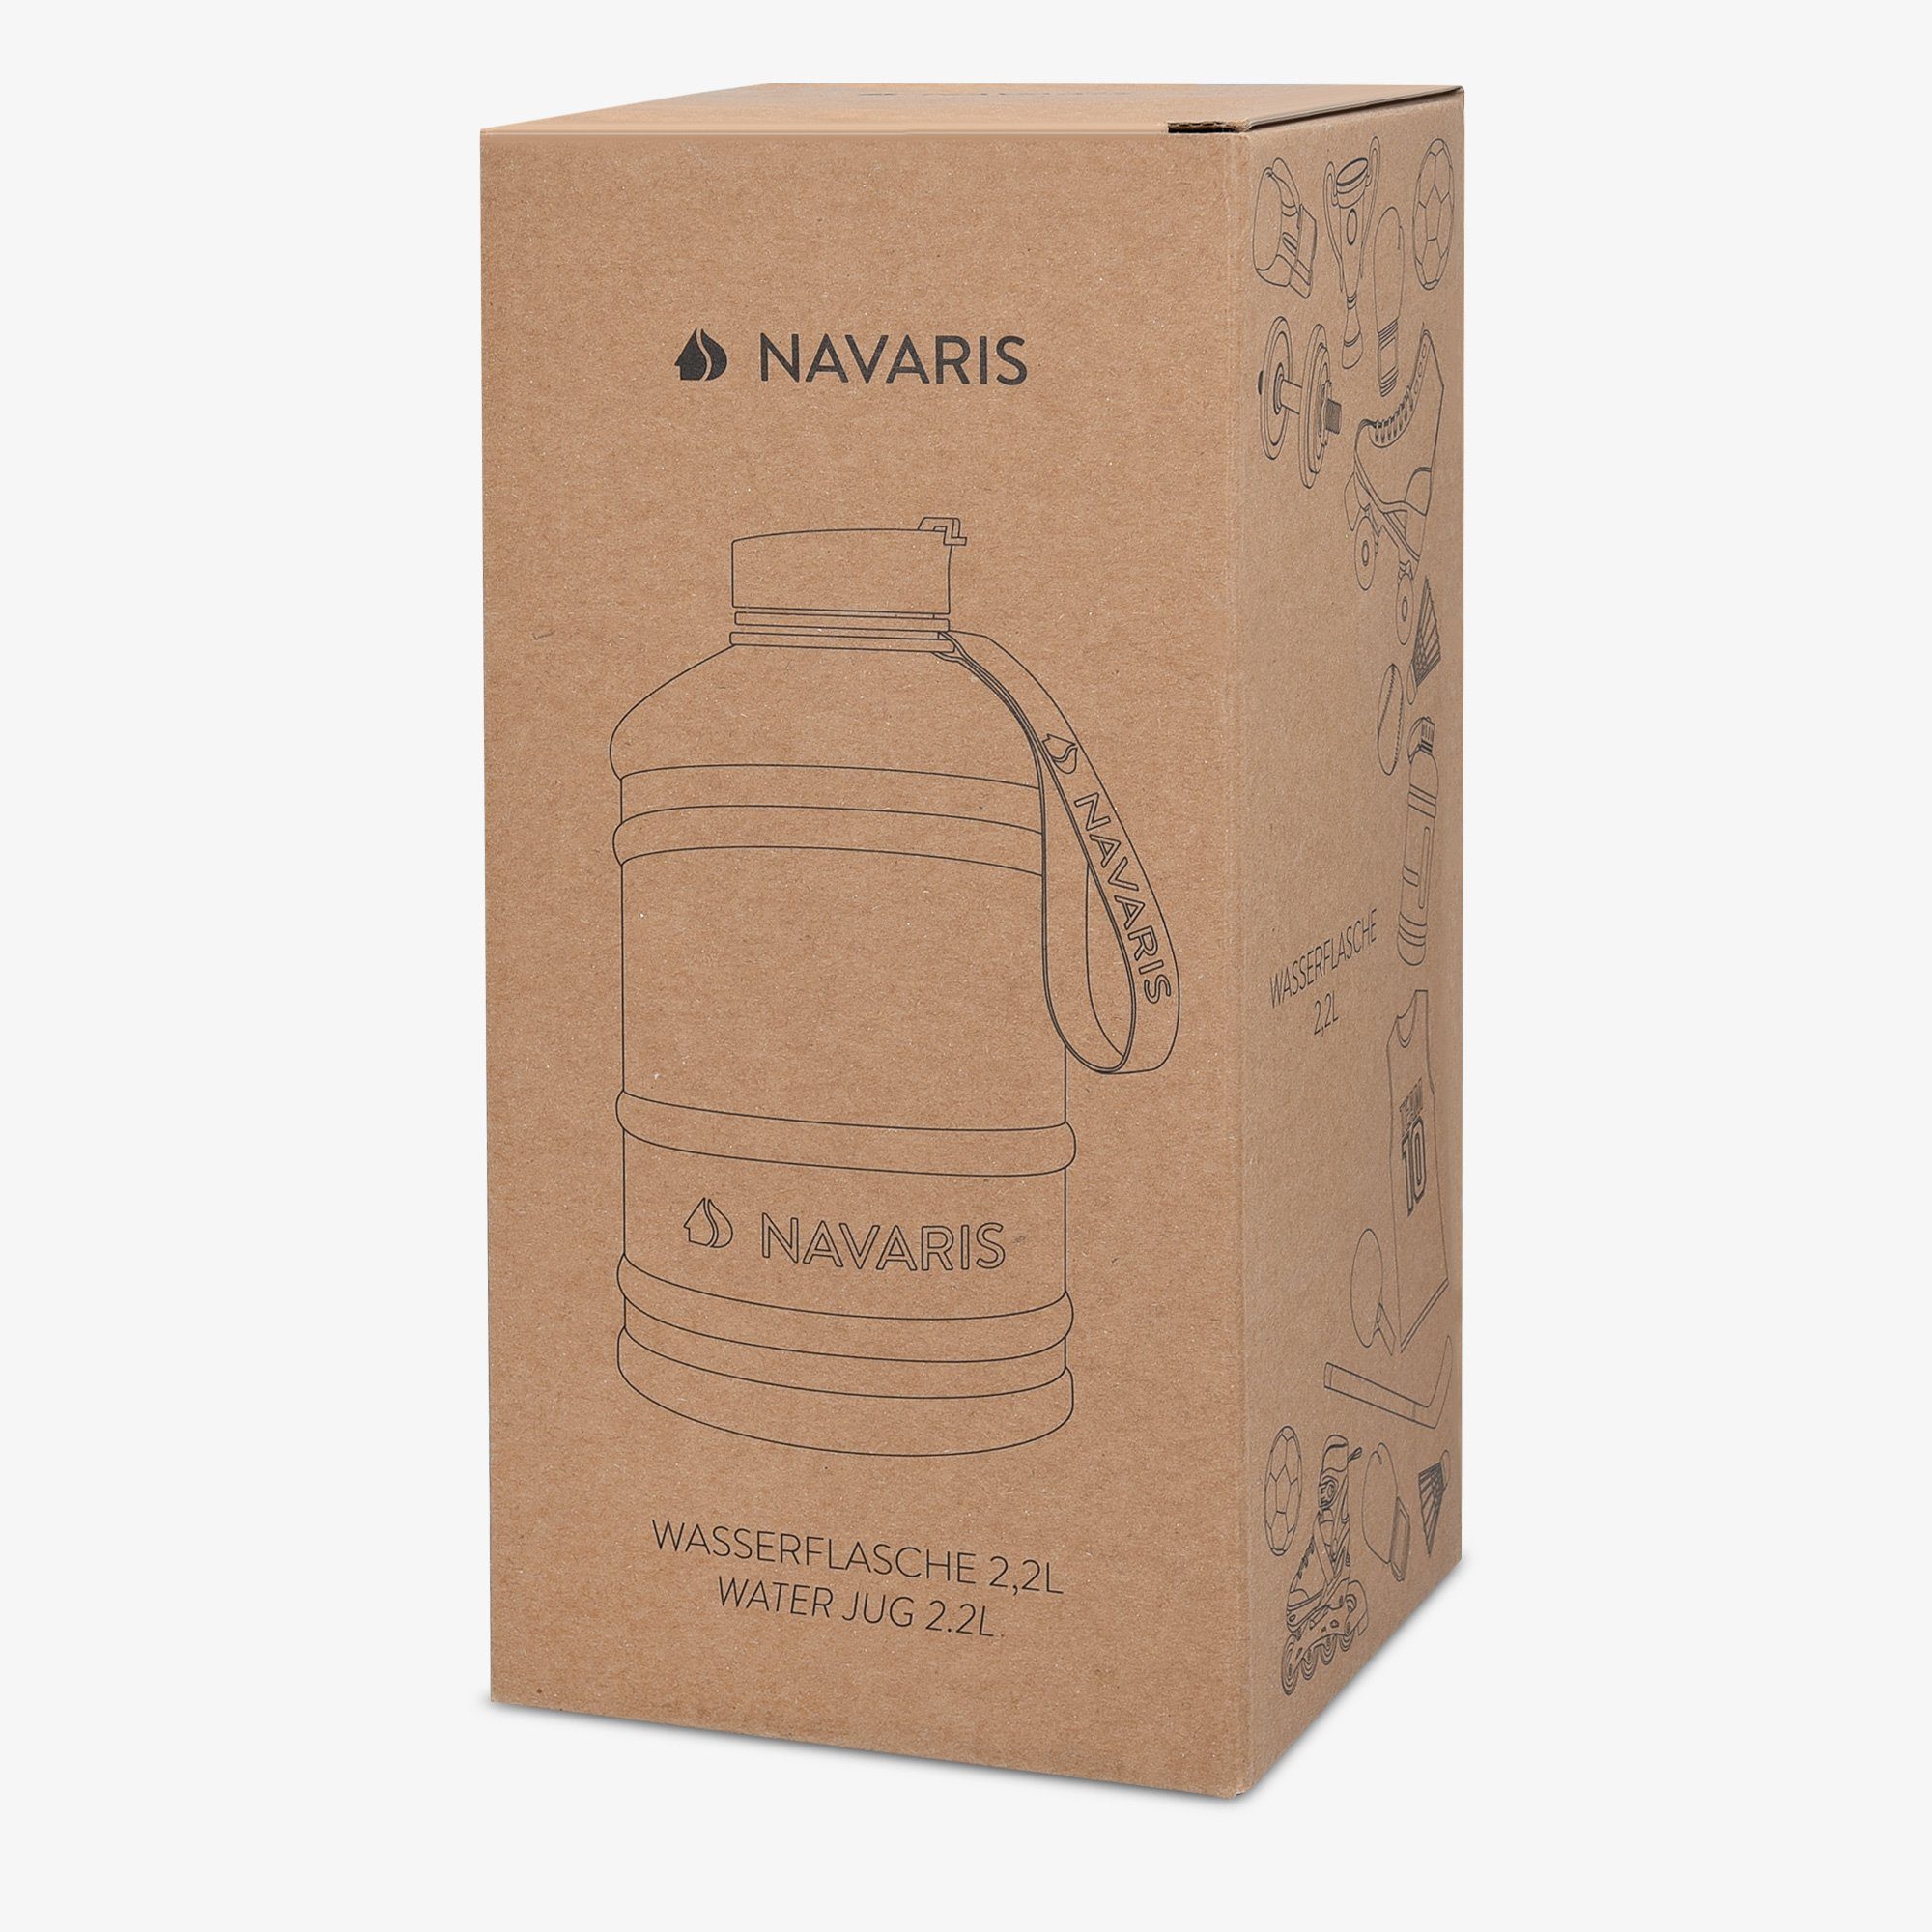 Navaris Trinkflasche 2,2l XXL Gym Flasche Sport Türkis - Bottle Wasserflasche Jug Water